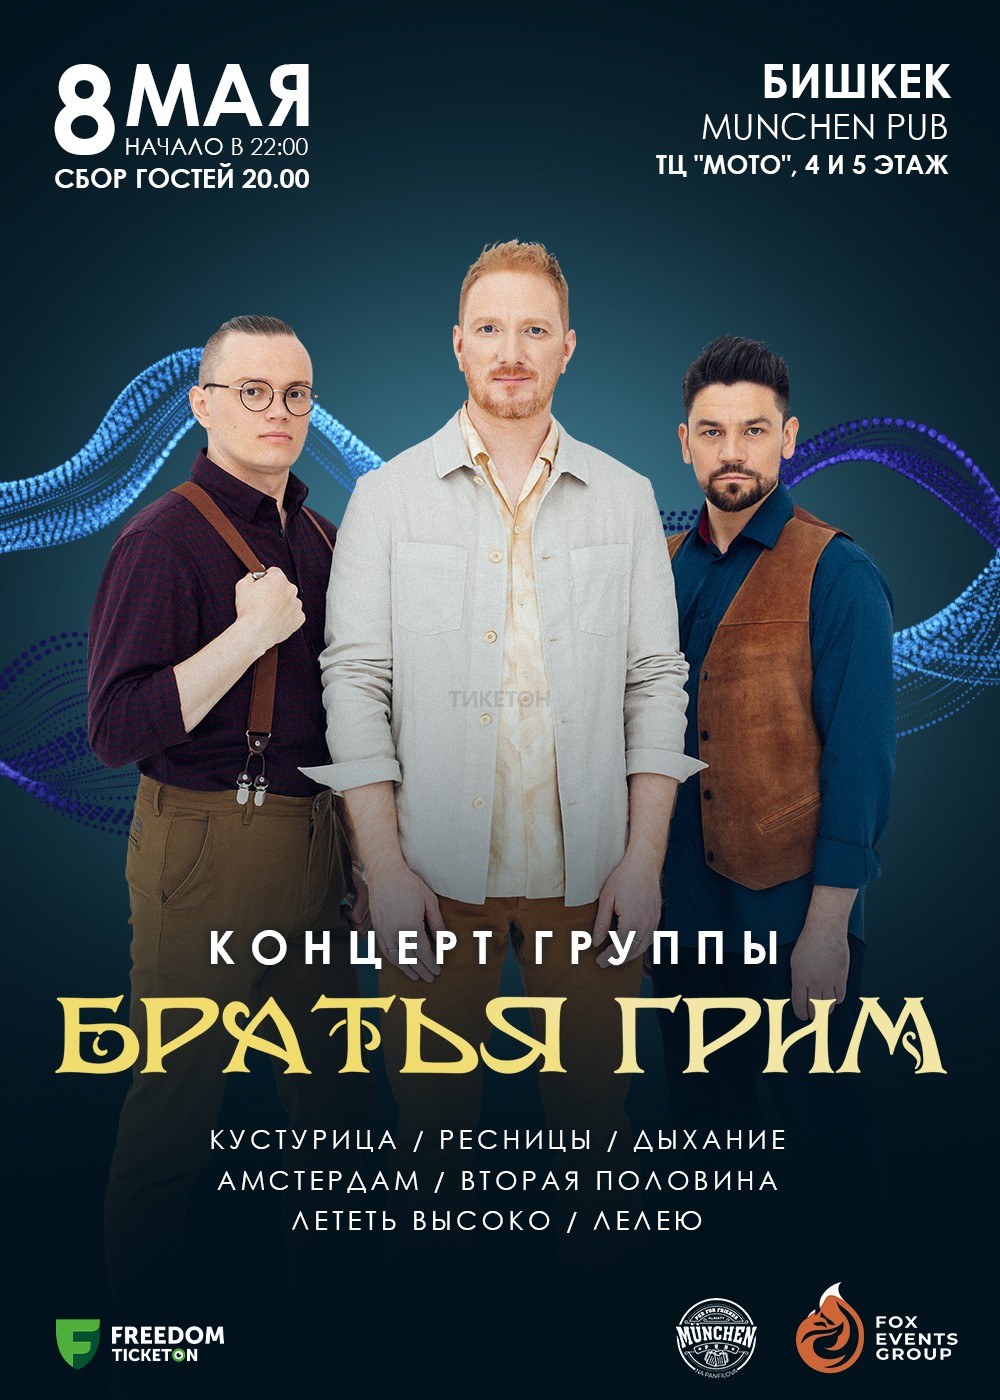 The Brothers Grimm concert in Bishkek